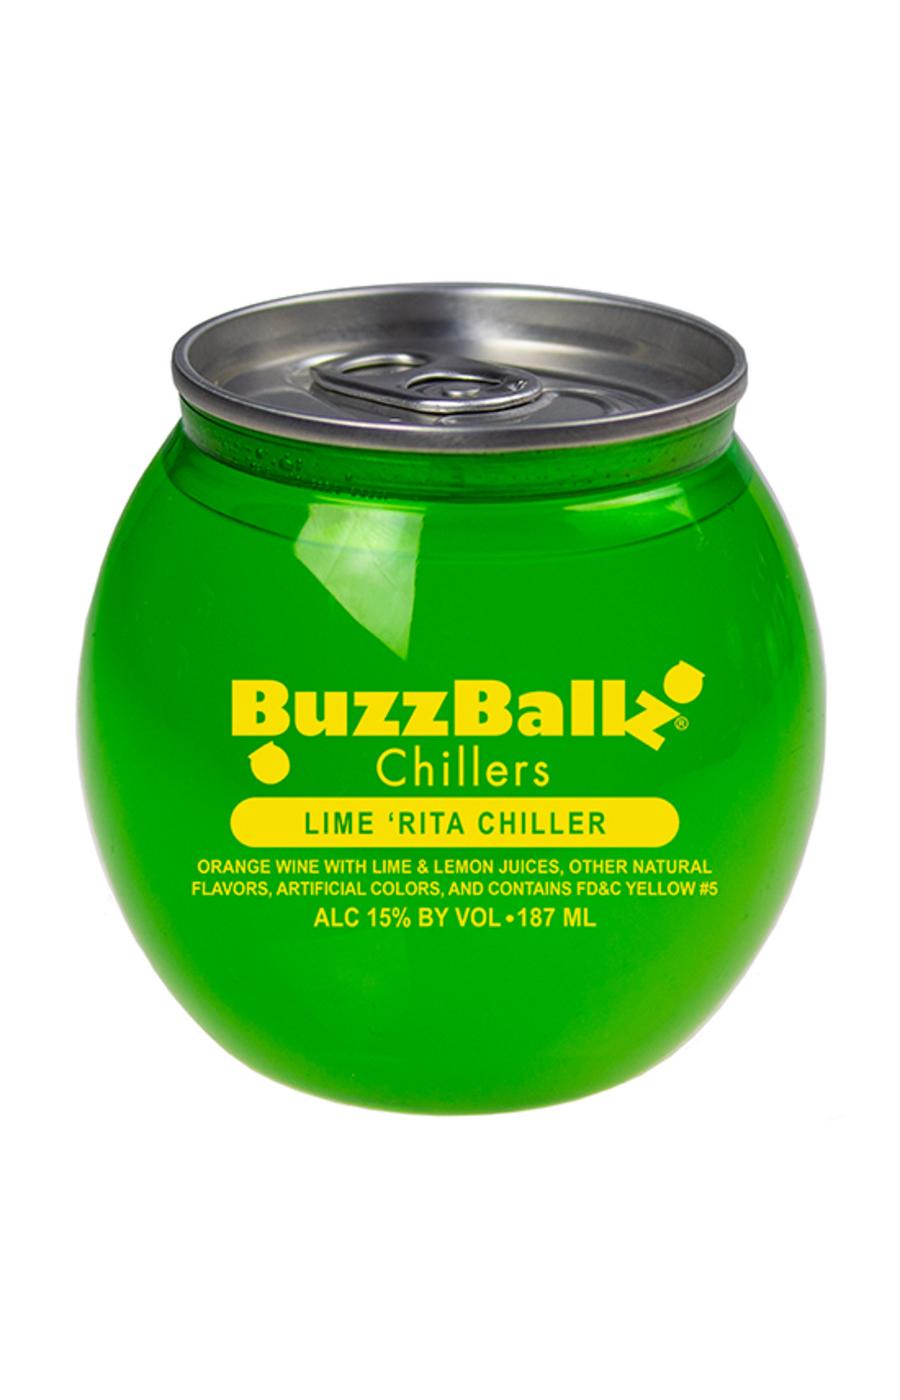 Buzzballz Lime 'Rita Chiller; image 1 of 2